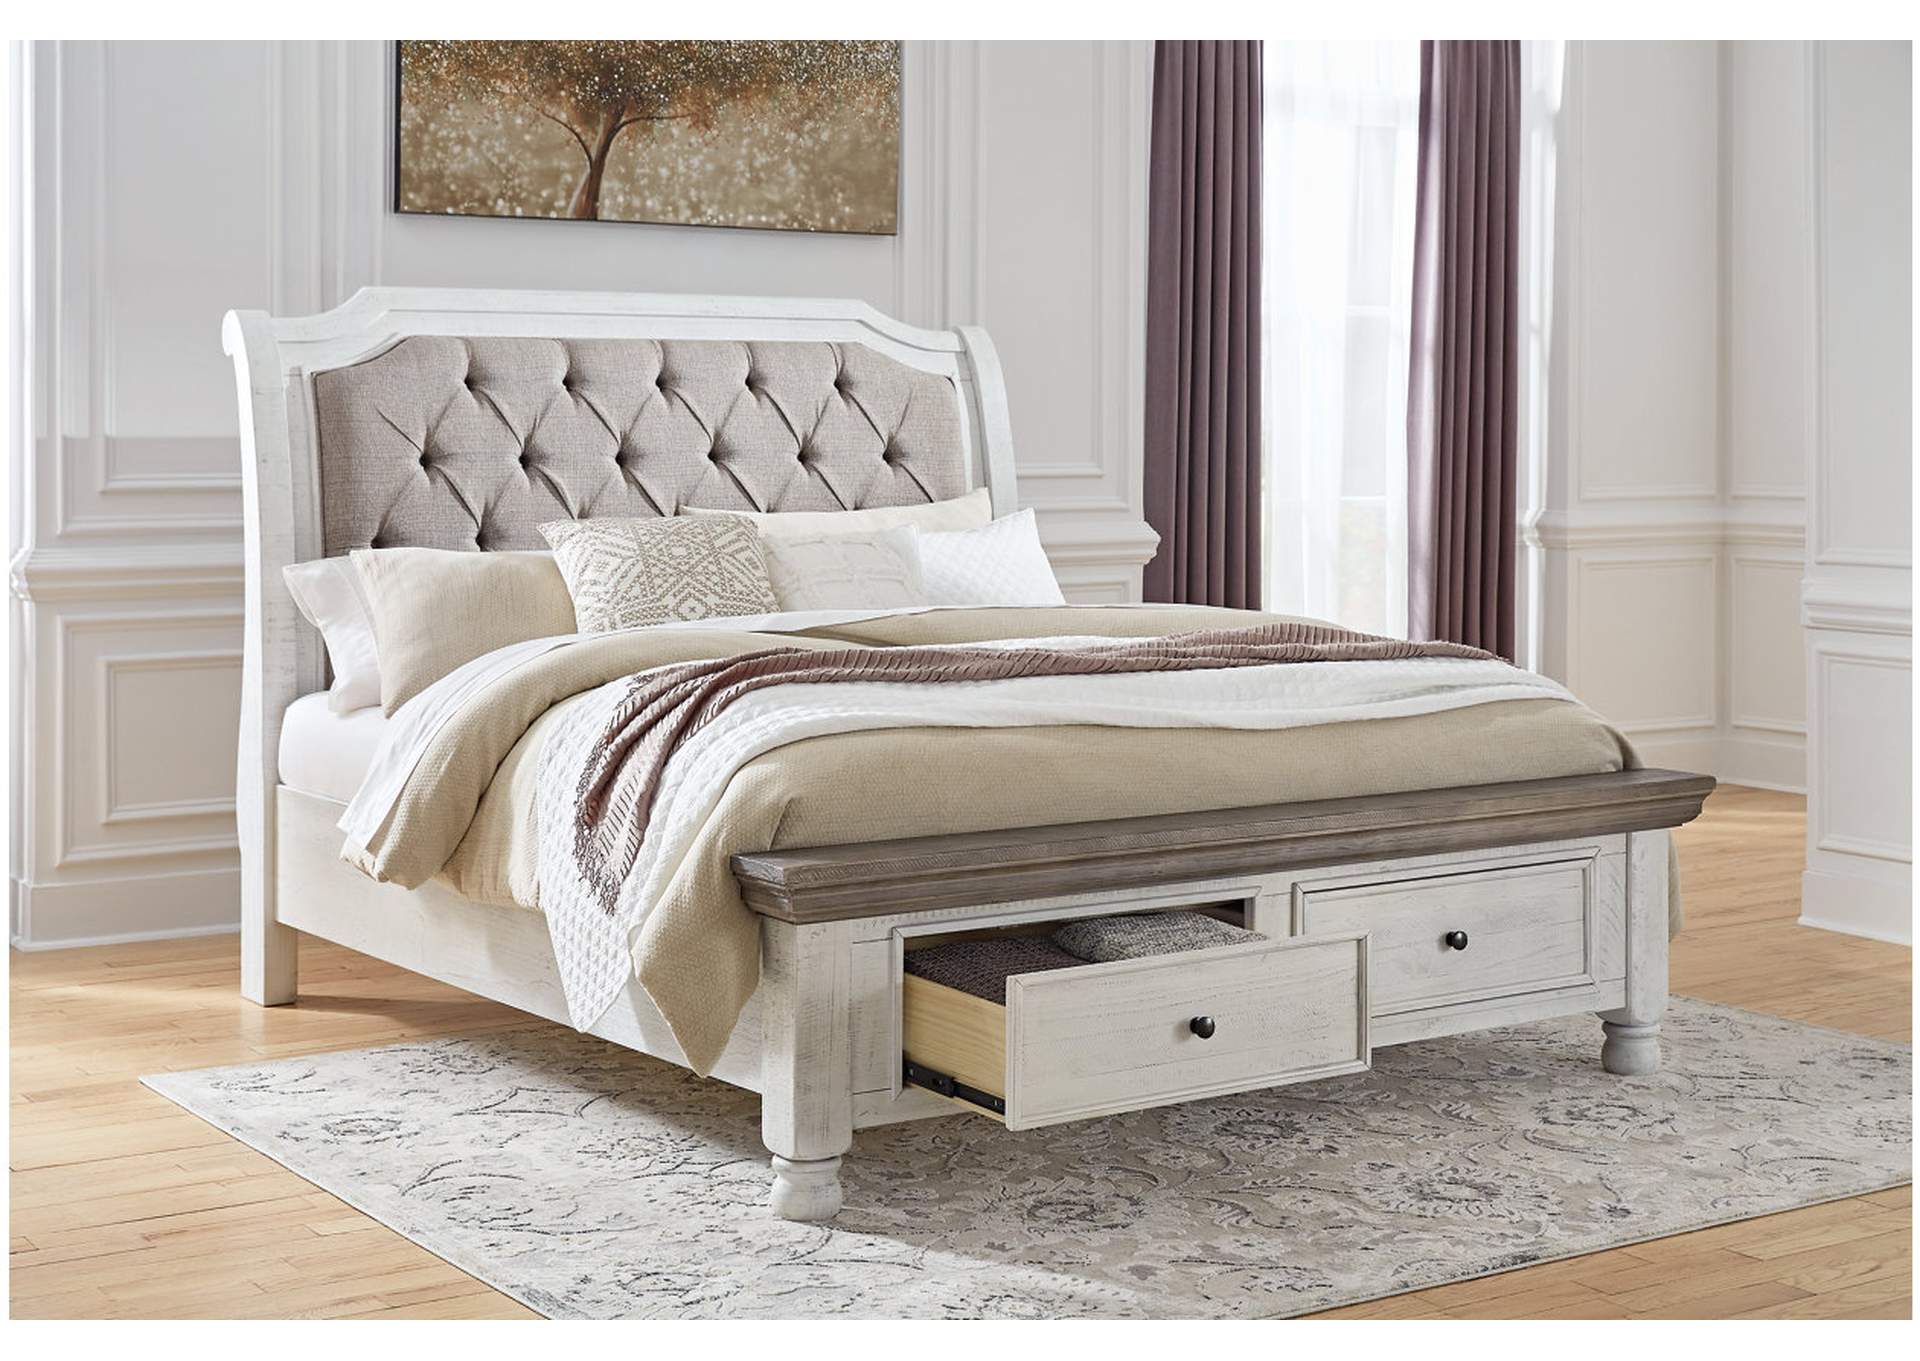 Havalance Queen Sleigh Bed with Storage with Dresser,Millennium